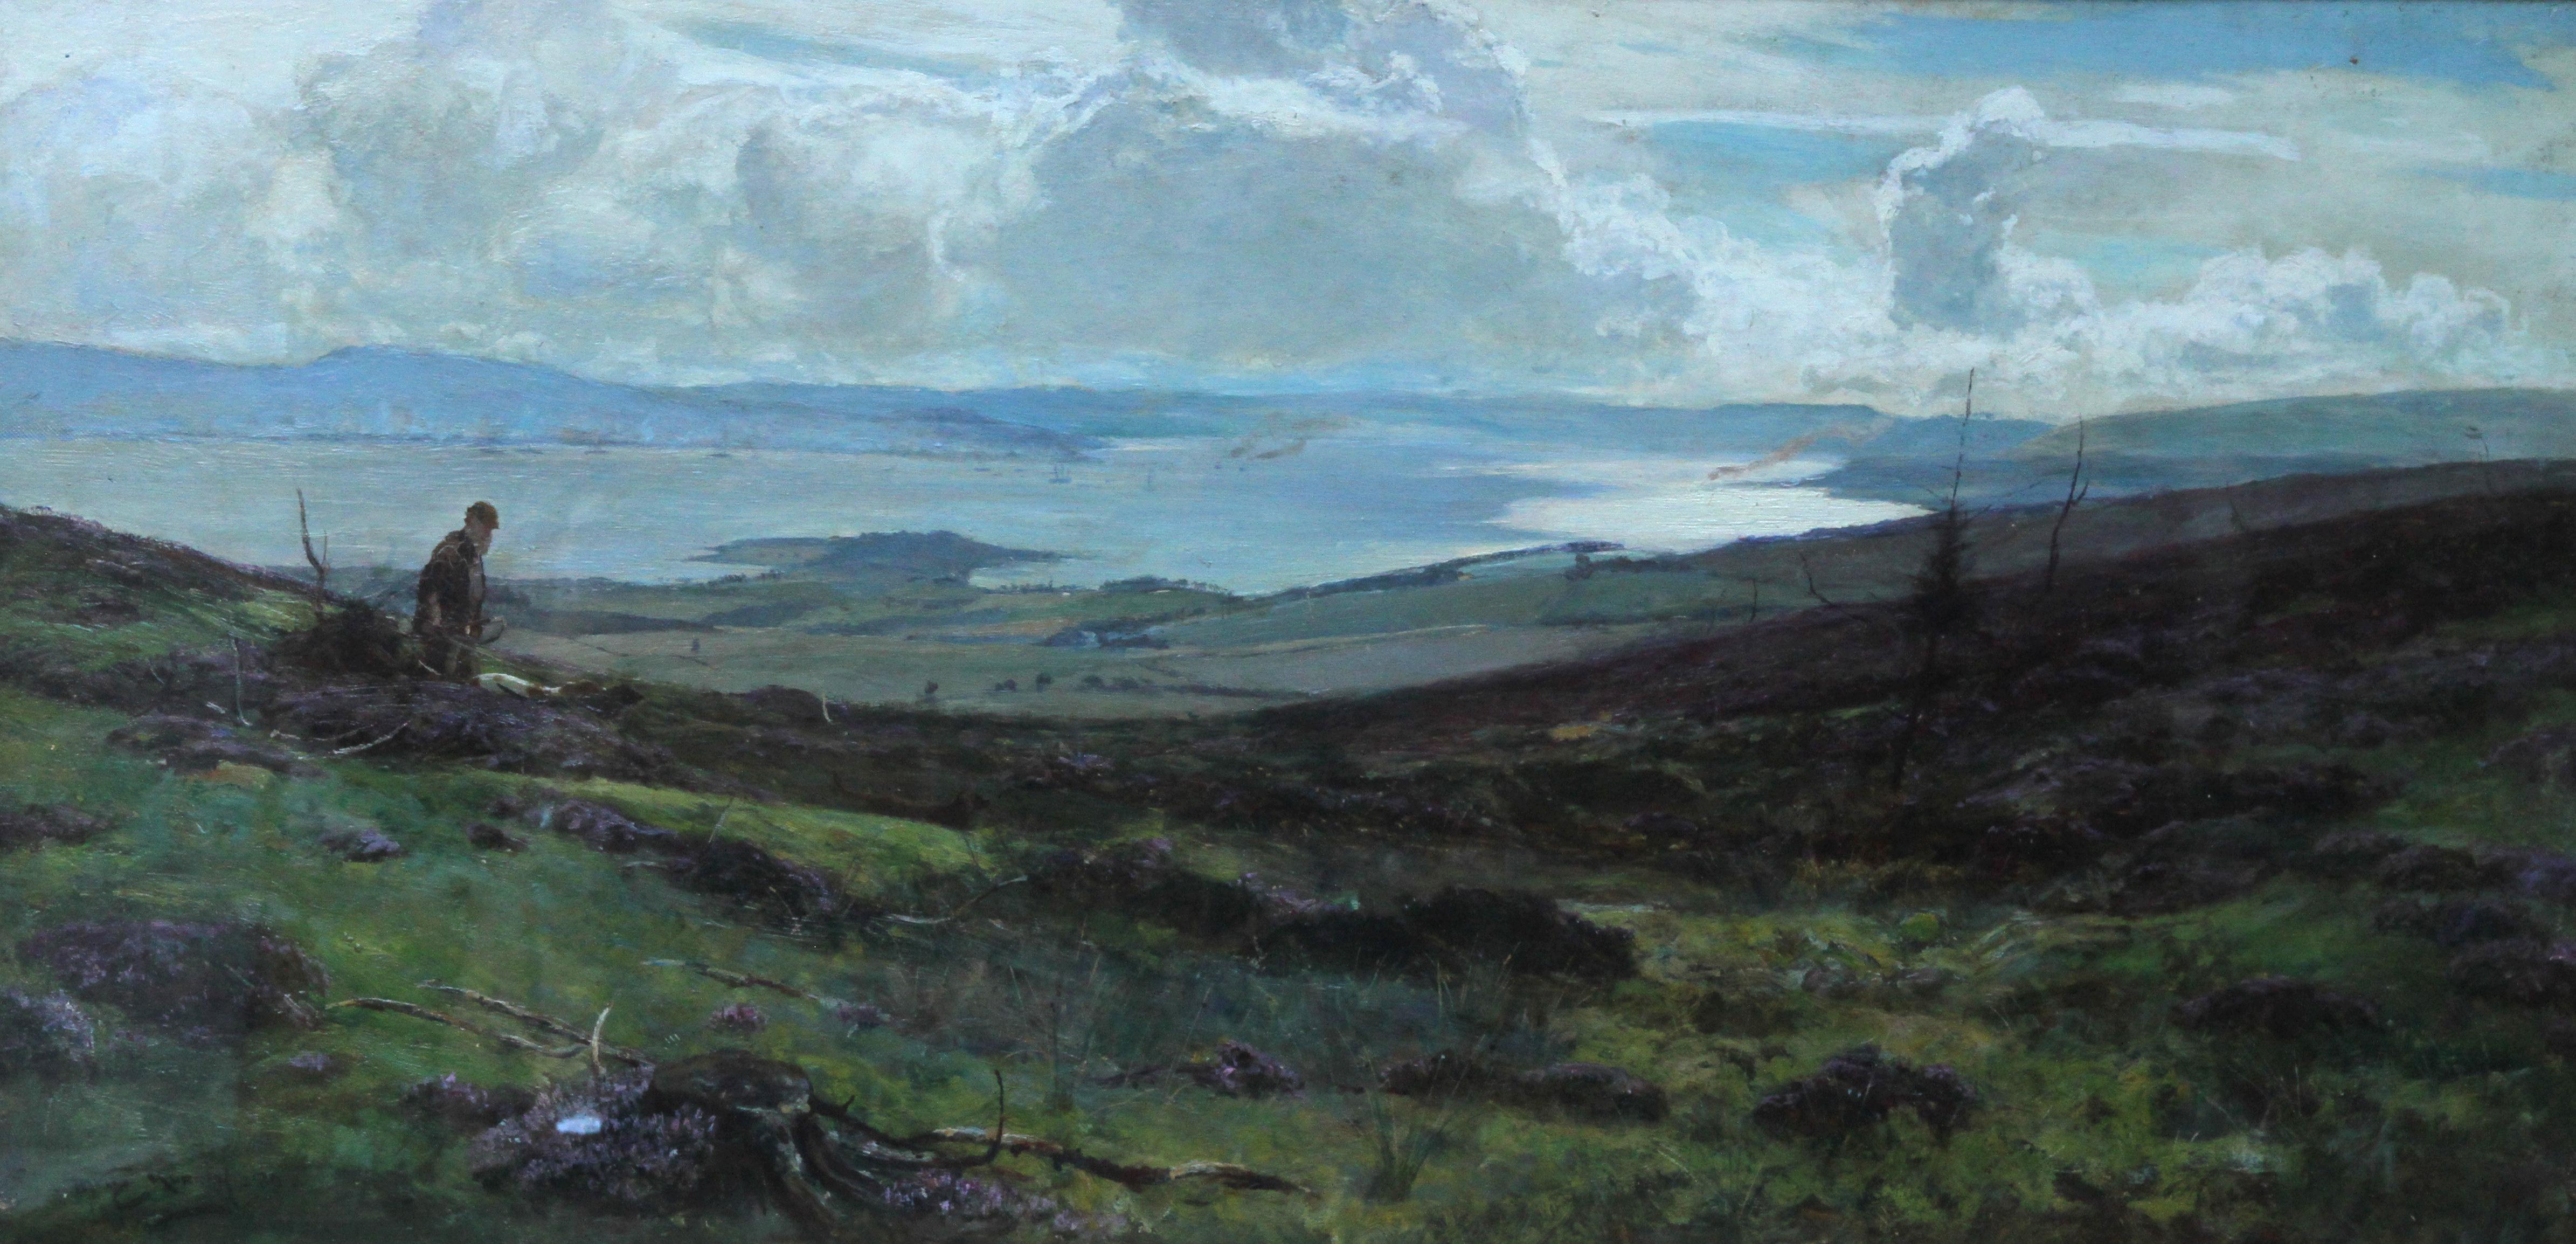 Le contreplaqué de Darleith Moor au-dessus de Cardross - Paysage victorien écossais - Painting de Sir David Murray